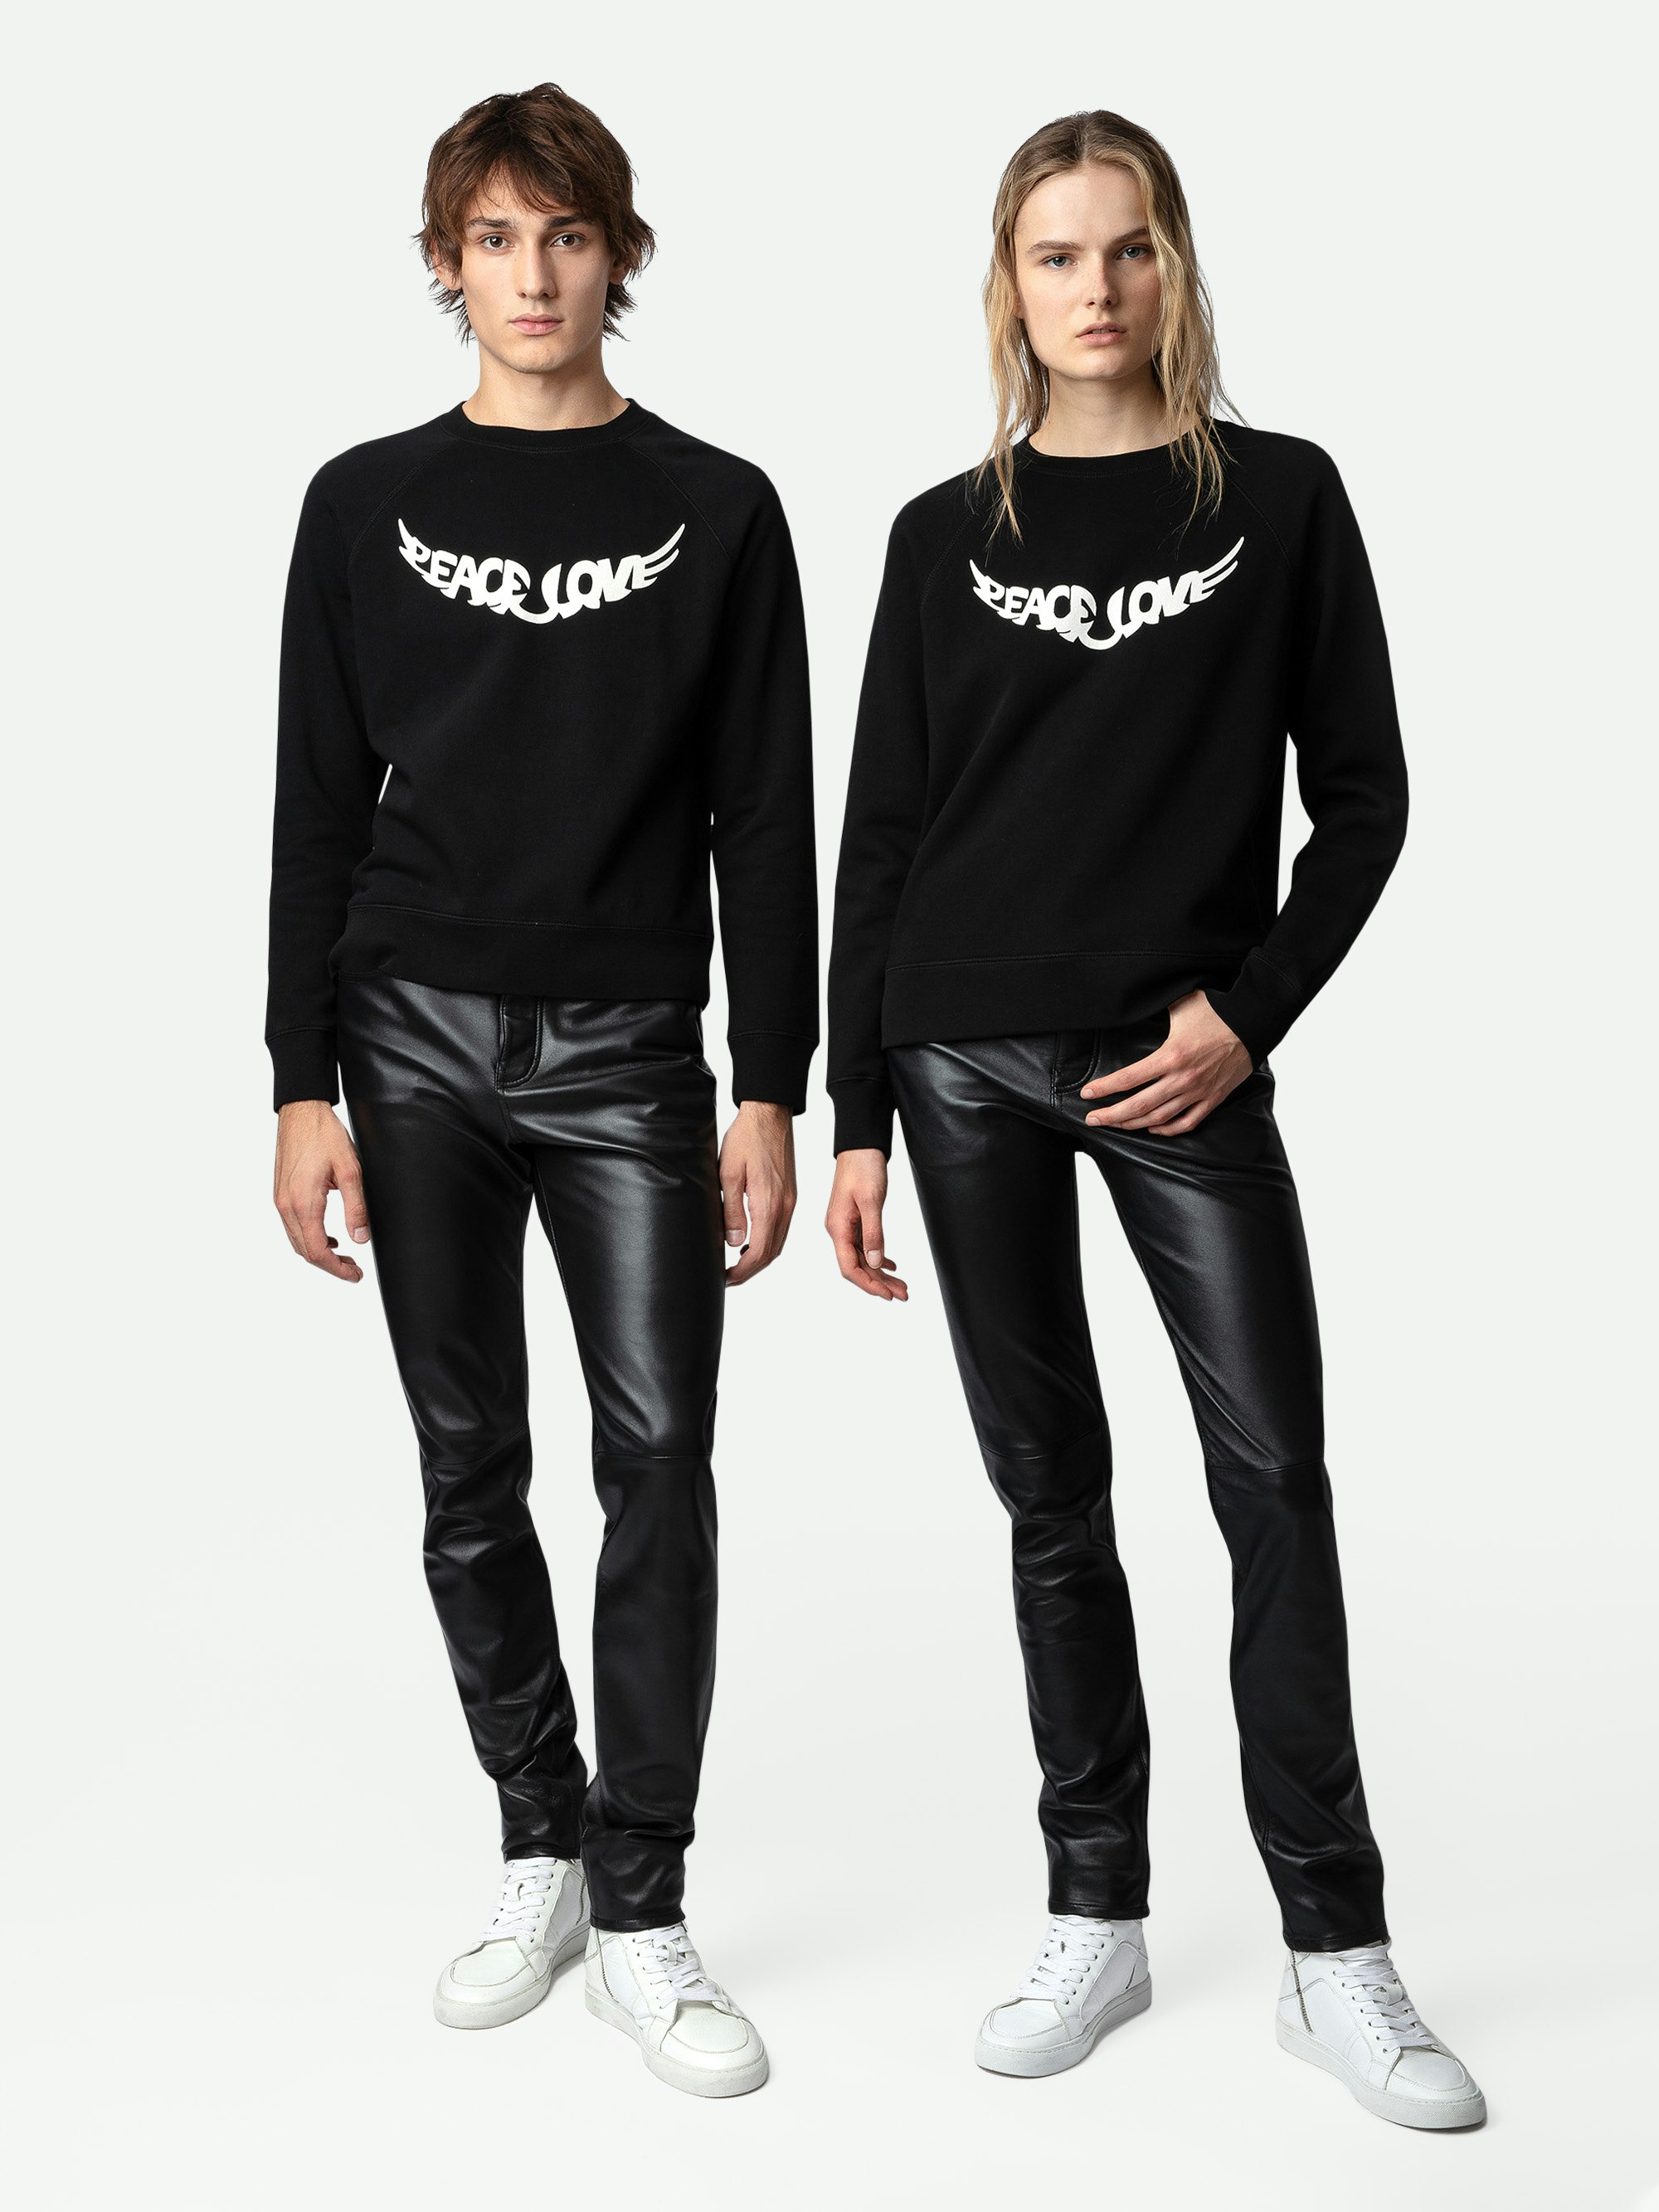 Sweatshirt Upper Peace & Love - Sweatshirt en coton noir orné d'une inscription "Peace & Love" en forme d'ailes unisexe.